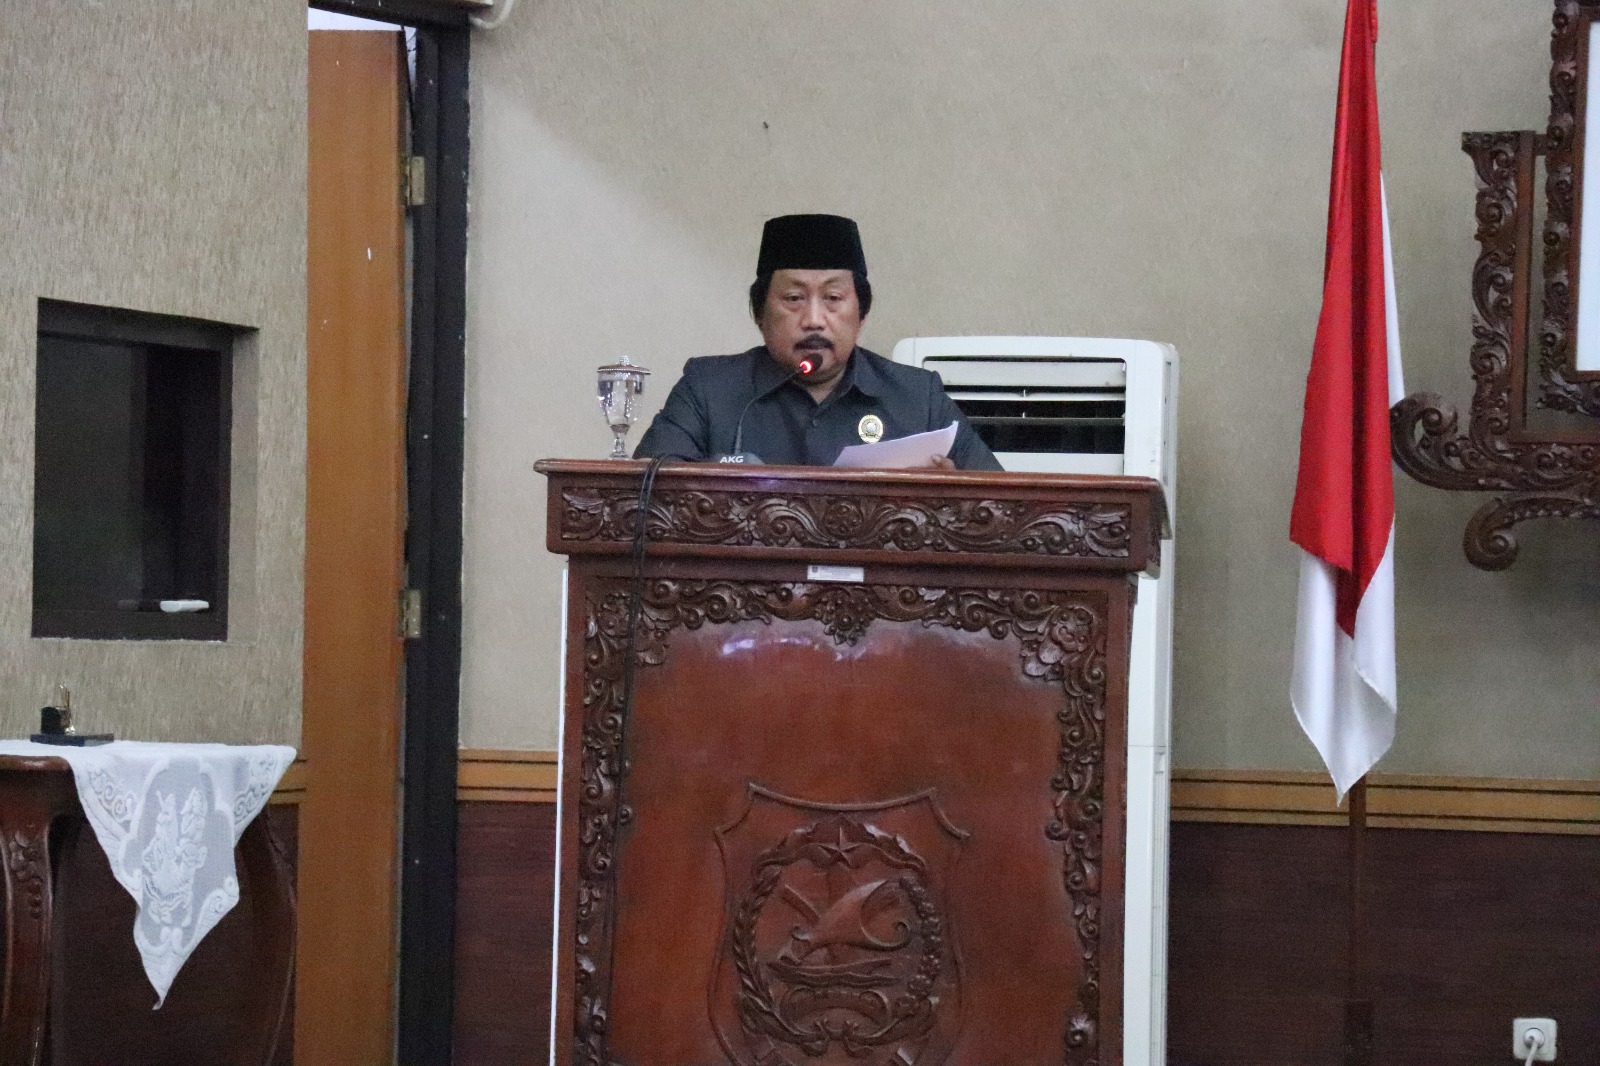 Ketua Fraksi Partai Golongan Karya DPRD Kota Tegal M Muslim. Foto: Sekretariat DPRD Kota Tegal